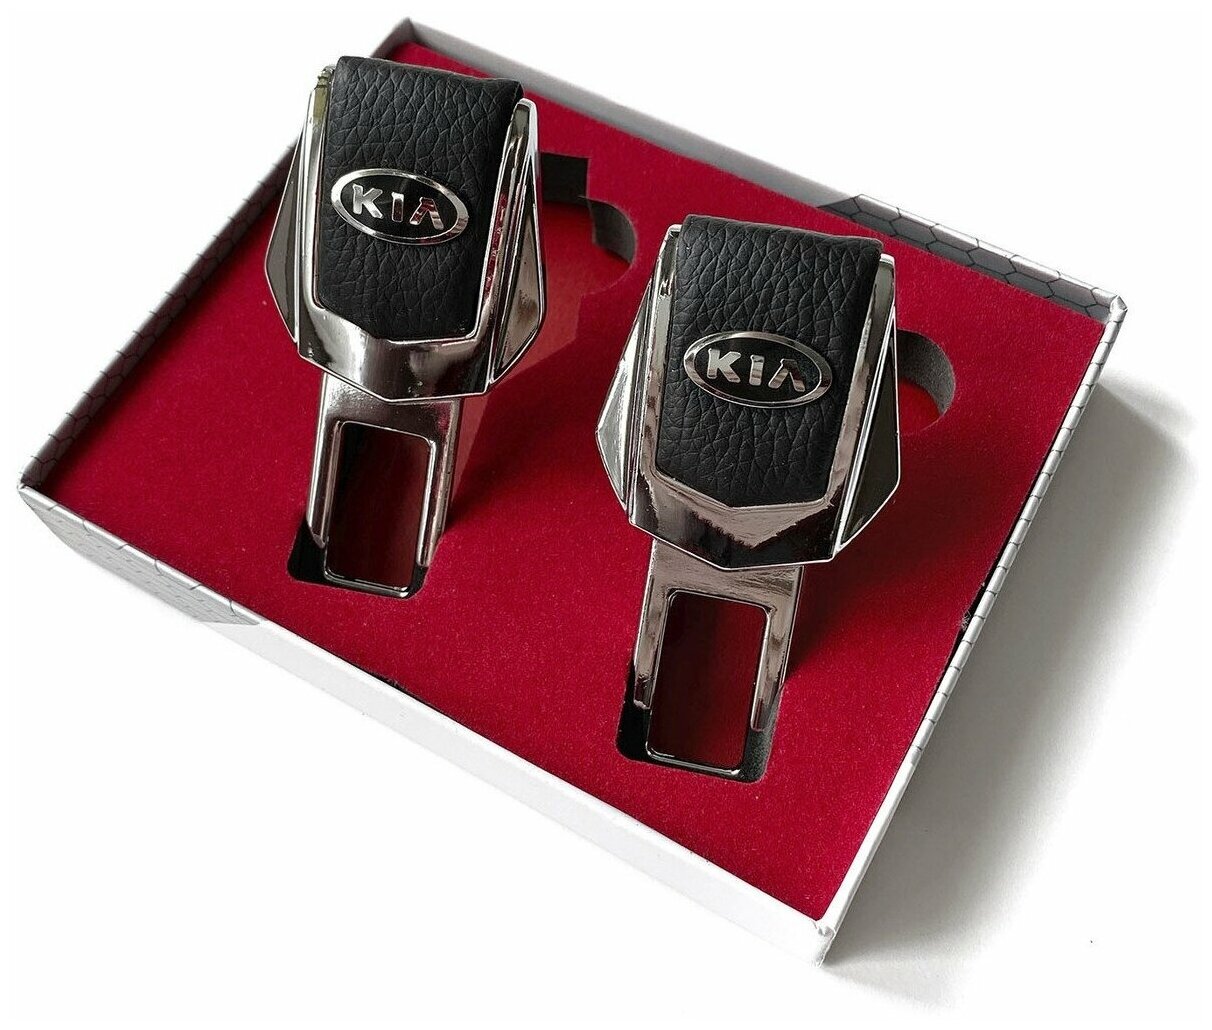 Заглушки ремней безопасности для "Kia" (Киа). Натуральная кожа и хромированный металл. В подарочной упаковке комплект из 2 штук.